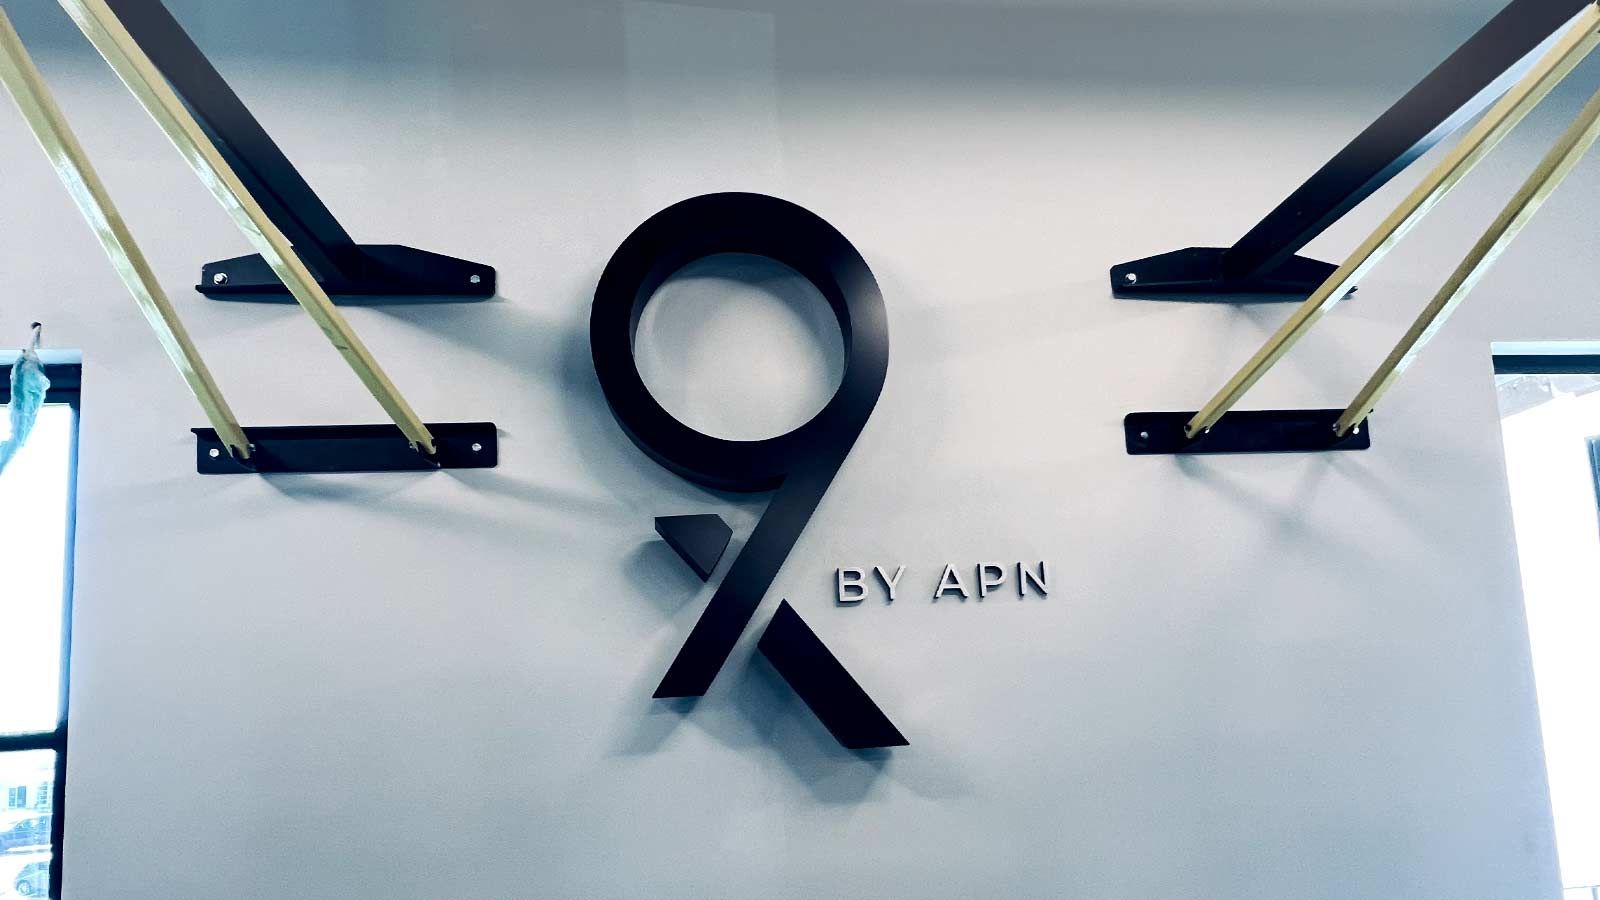 APN Capital interior sign for branding